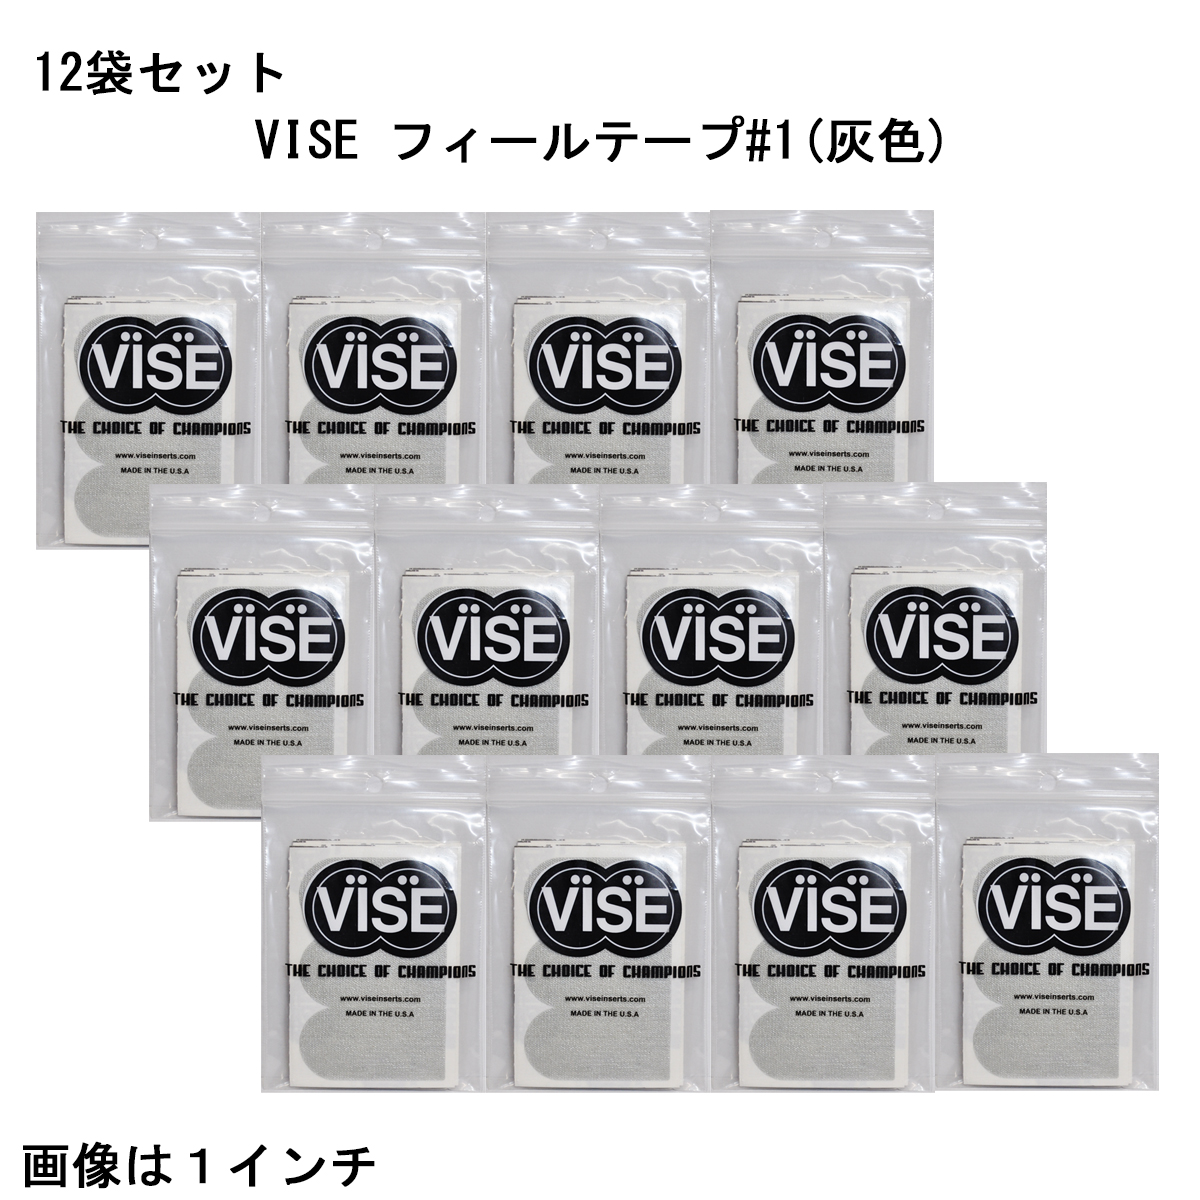 【12袋セット】VISE フィールテープ#1(灰色)